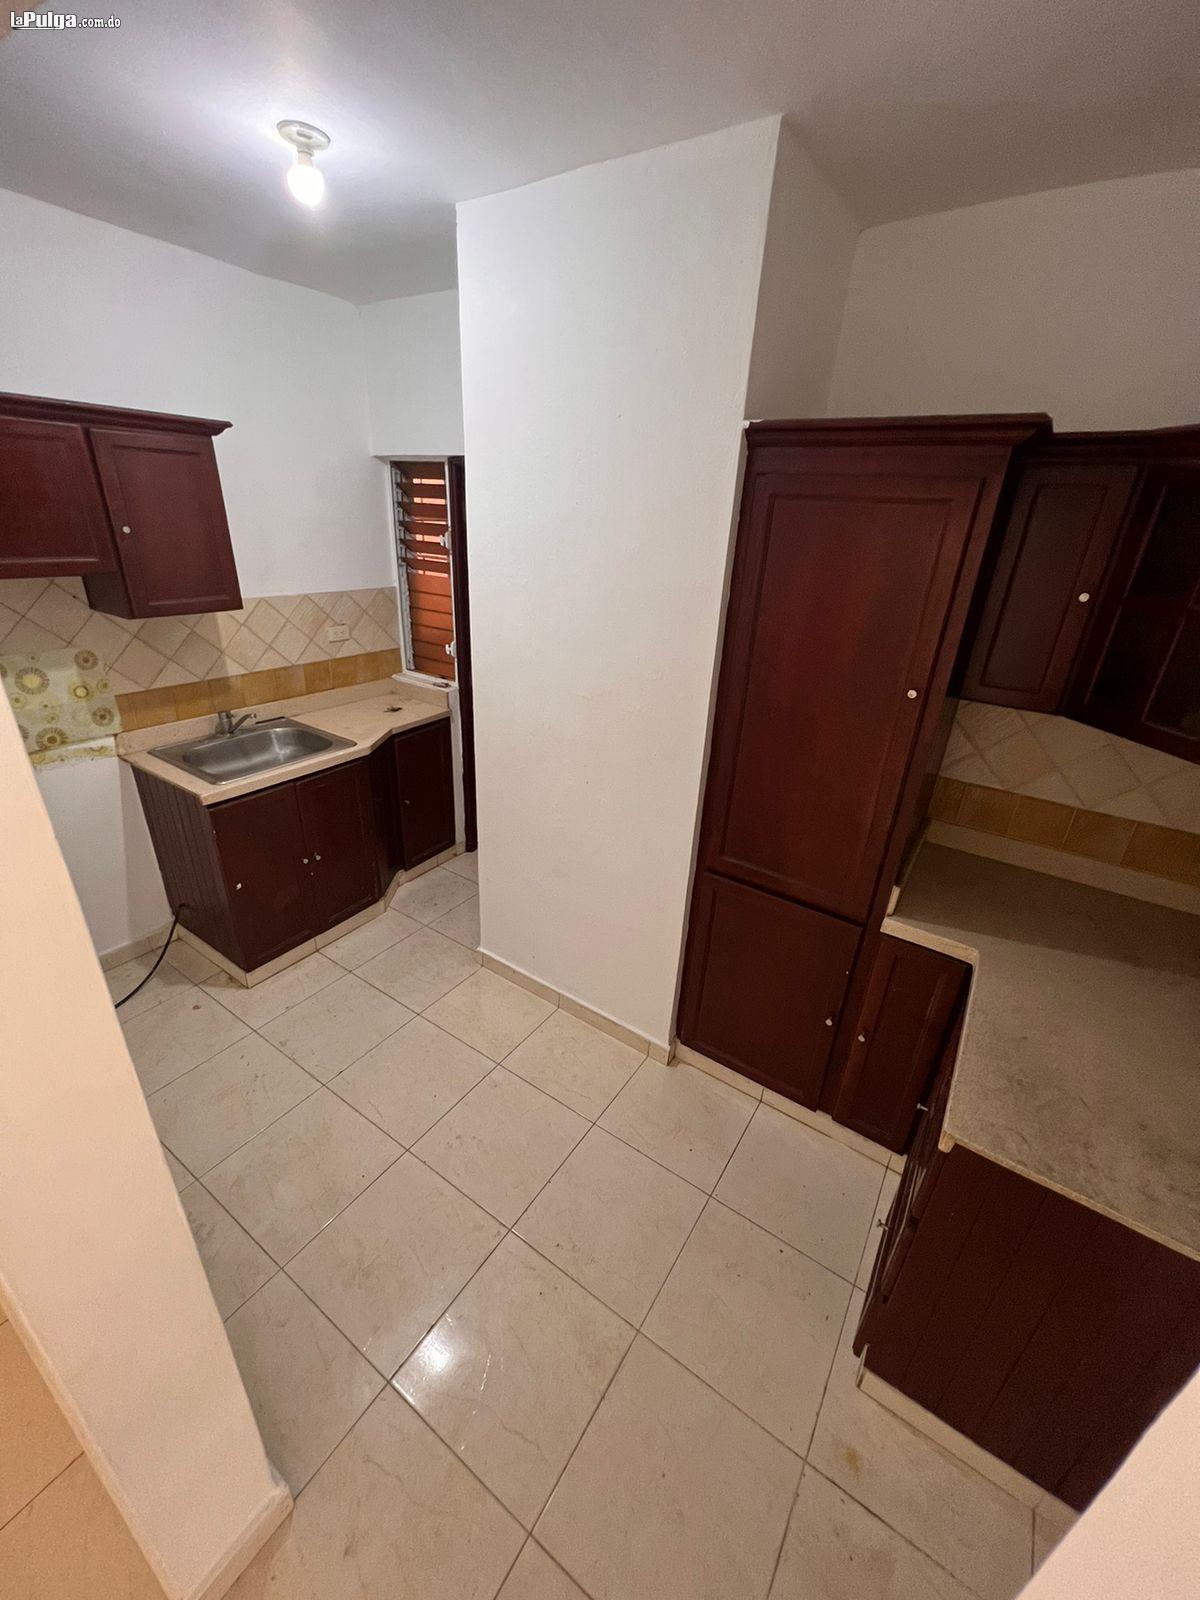 Vendo apartamento de 3 habitaciones en San Isidro Foto 7134176-2.jpg